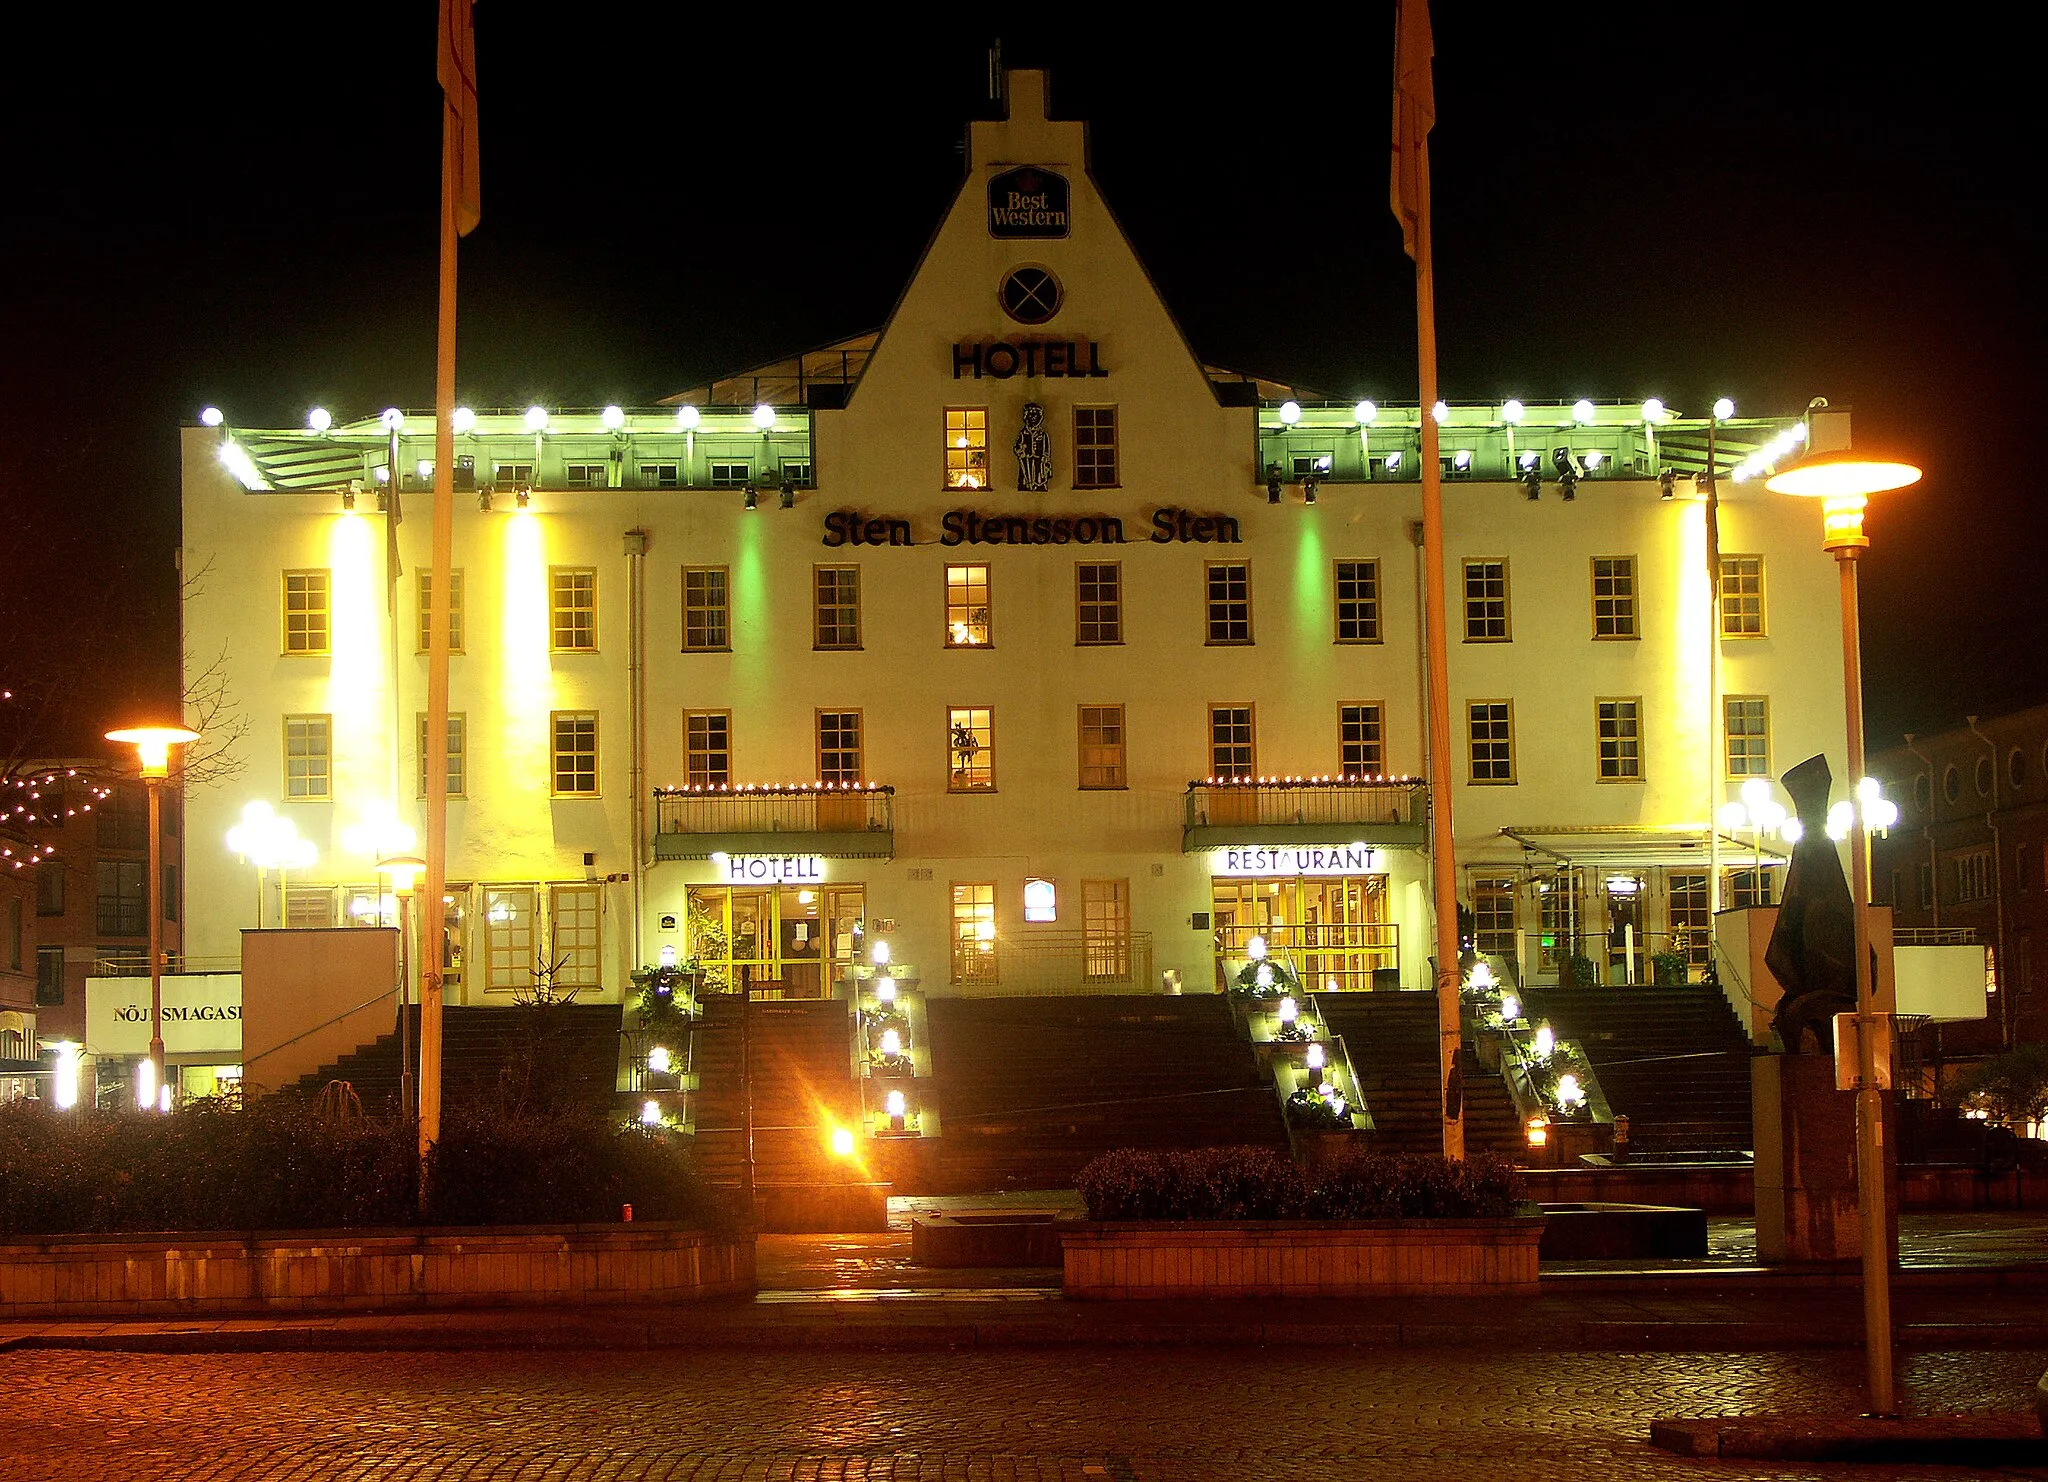 Photo showing: Hotel Sten Stensson Sten in Eslöv, Sweden